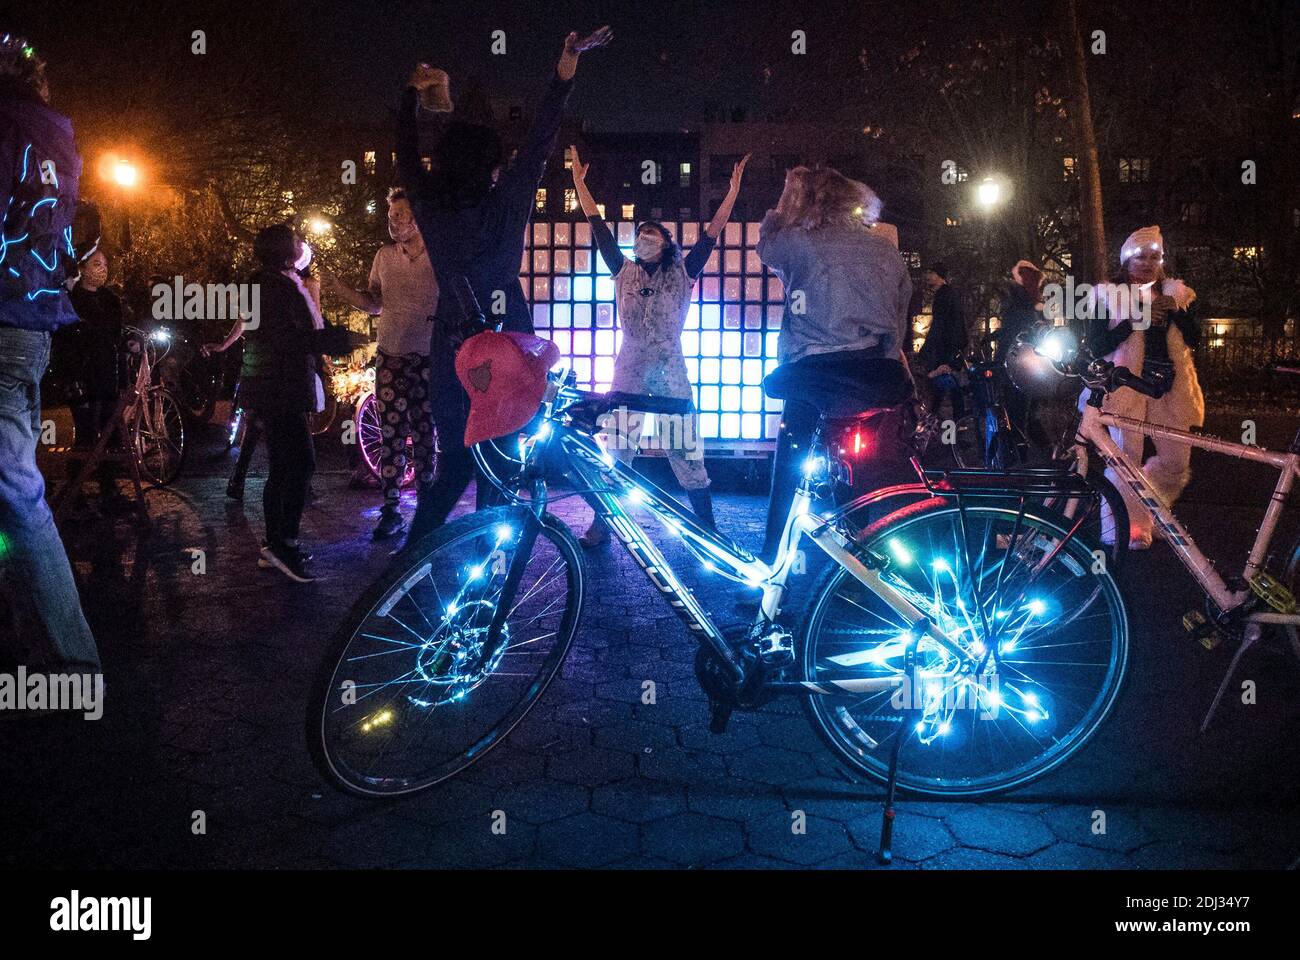 12 de diciembre de 2020, Nueva York, Nueva York, EE.UU.: Los asistentes móviles se reúnen en Tompkins Square Park, adornándose a sí mismos y sus bicicletas con luces de neón, celebrando Hanakauh, el Festival de las luces. La canción Carrera de bicicletas de la banda Queen está jugando como la gente baila frente a un signo de neón:.''˜en tus marcas, consigue, ir.Carrera de bicicletas, carrera de bicicletas, carrera de bicicletas.bicicleta, bicicleta, bicicleta.Quiero montar en mi bicicleta, bicicleta, bicicleta, bicicleta.(Quiero una) Carrera de bicicletas.dices Coca-Cola, digo 'caine.dices John, dice John, Digo Wayne.Hot dog, digo que lo bueno hombre.no quiero ser el Presidente de Americaâ (crédito I Foto de stock